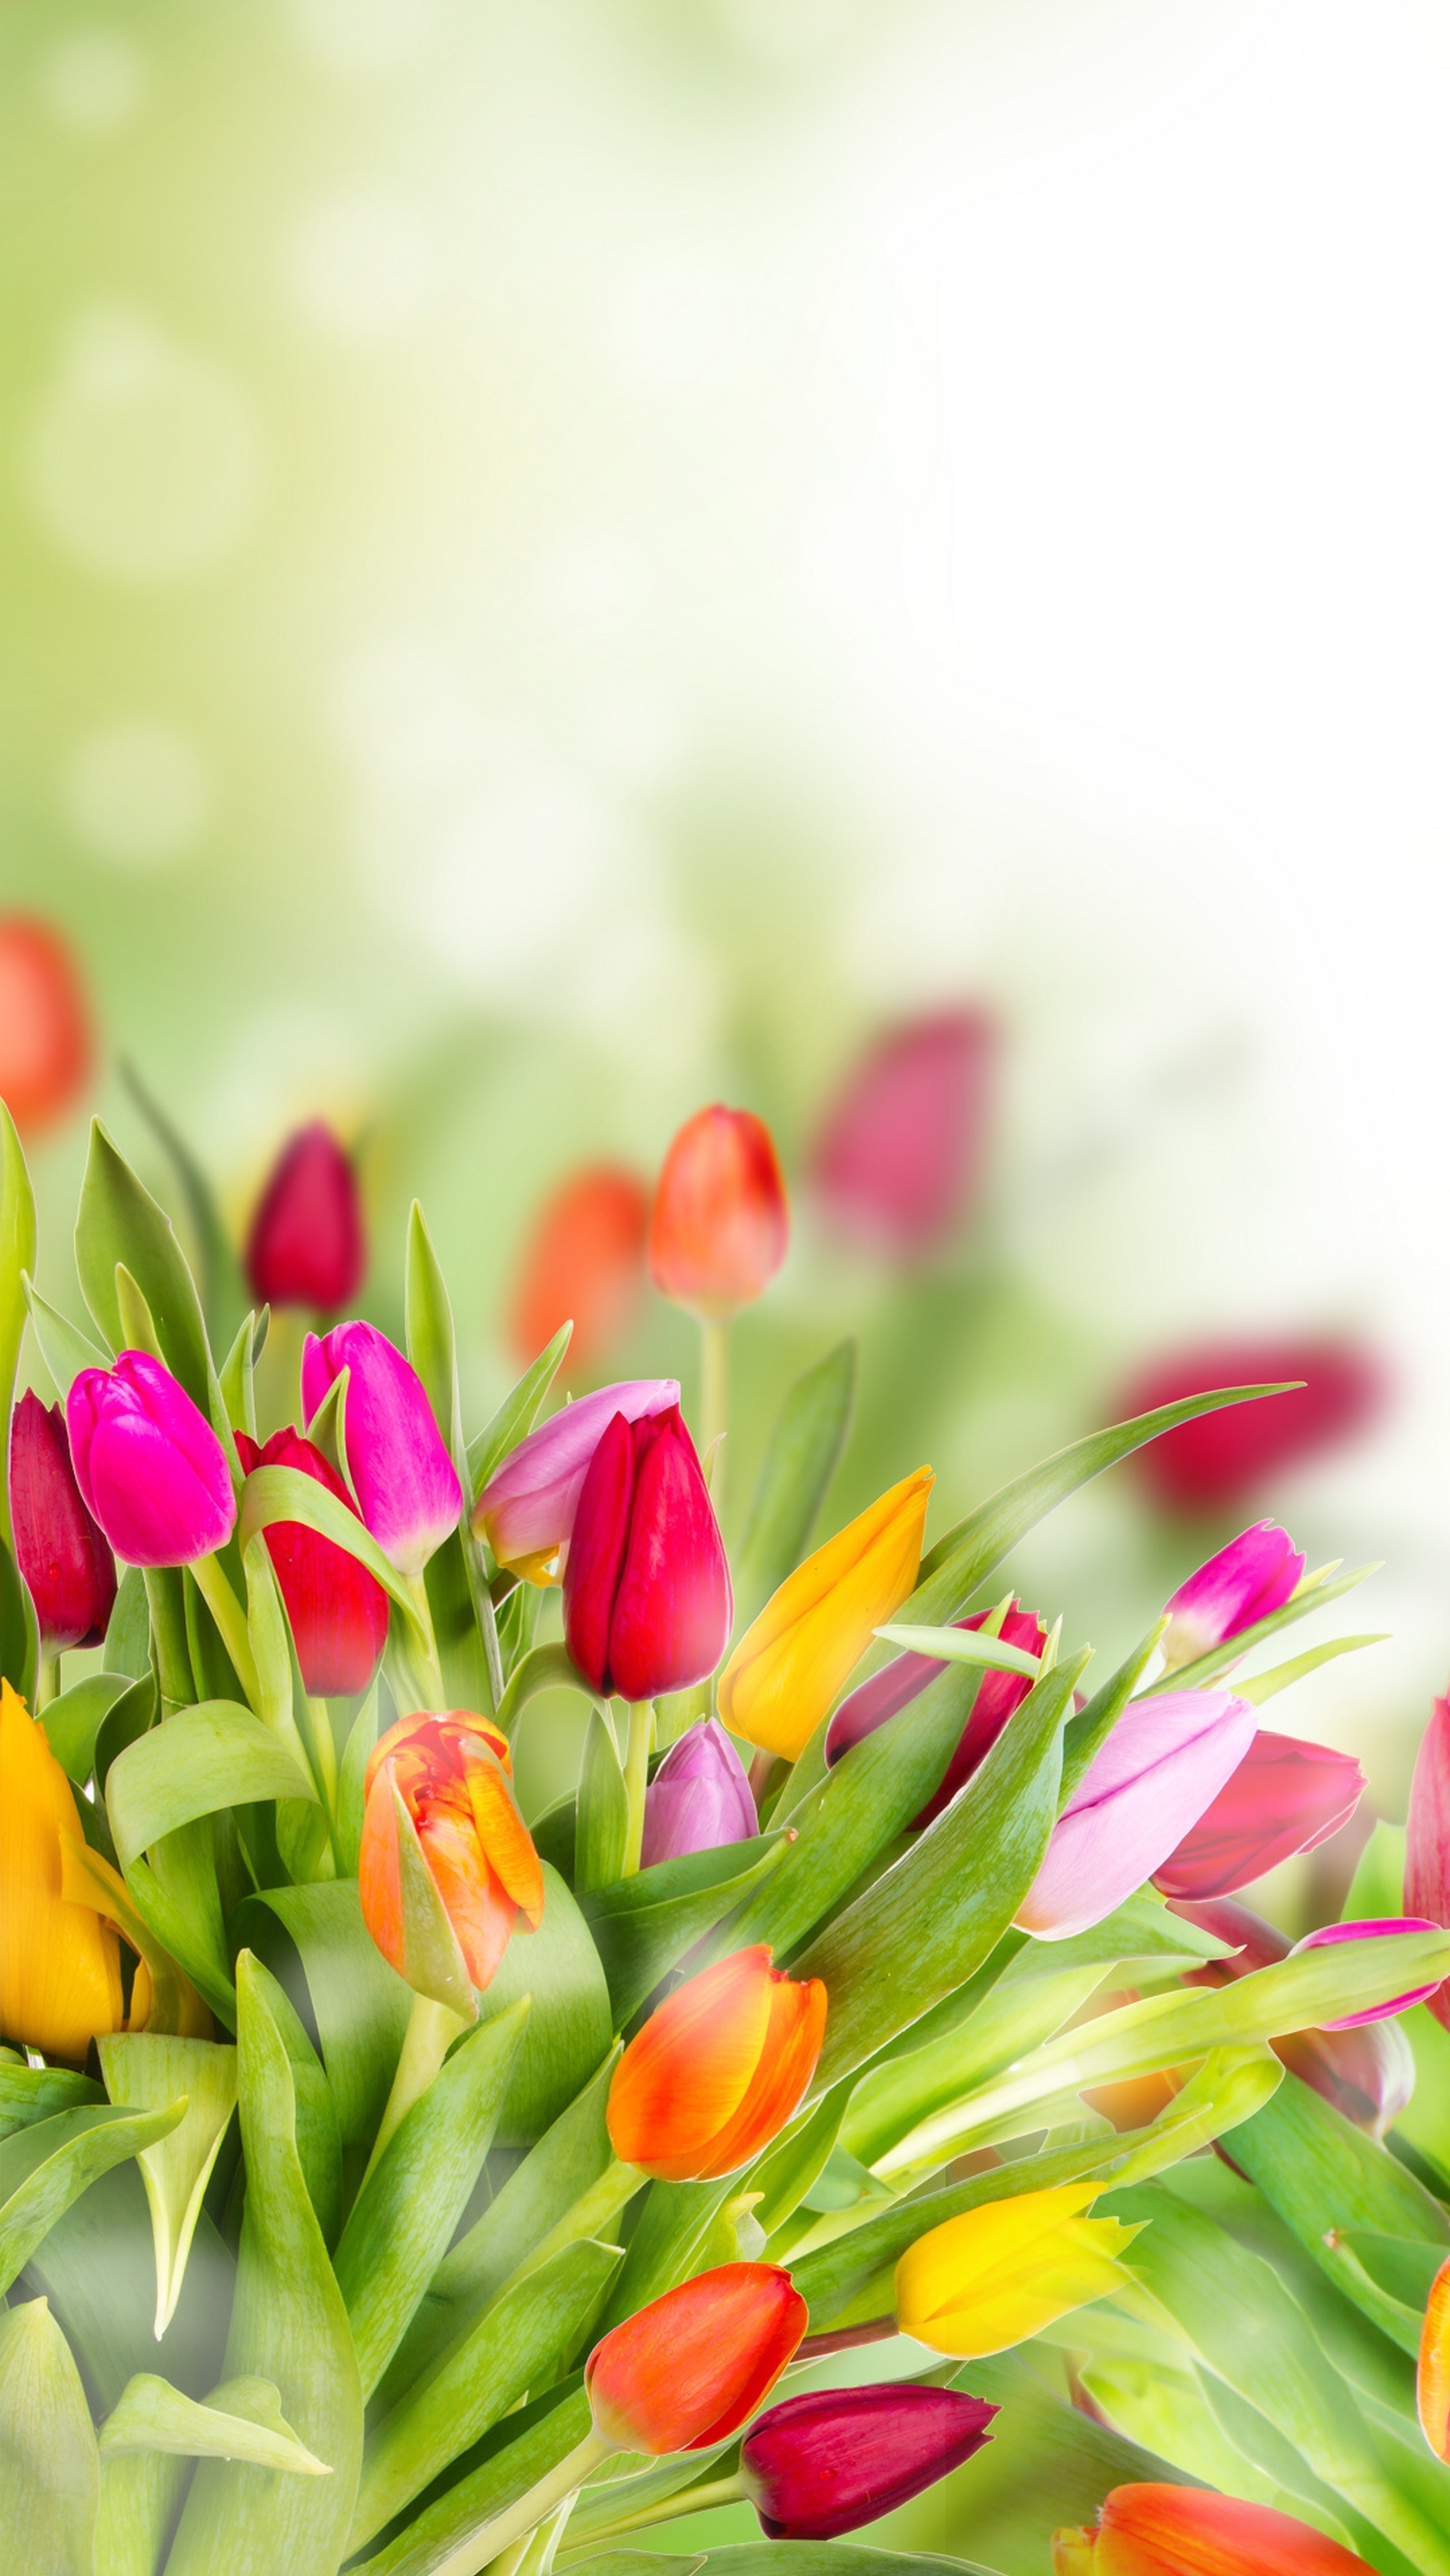 Wiosna w tulipanach